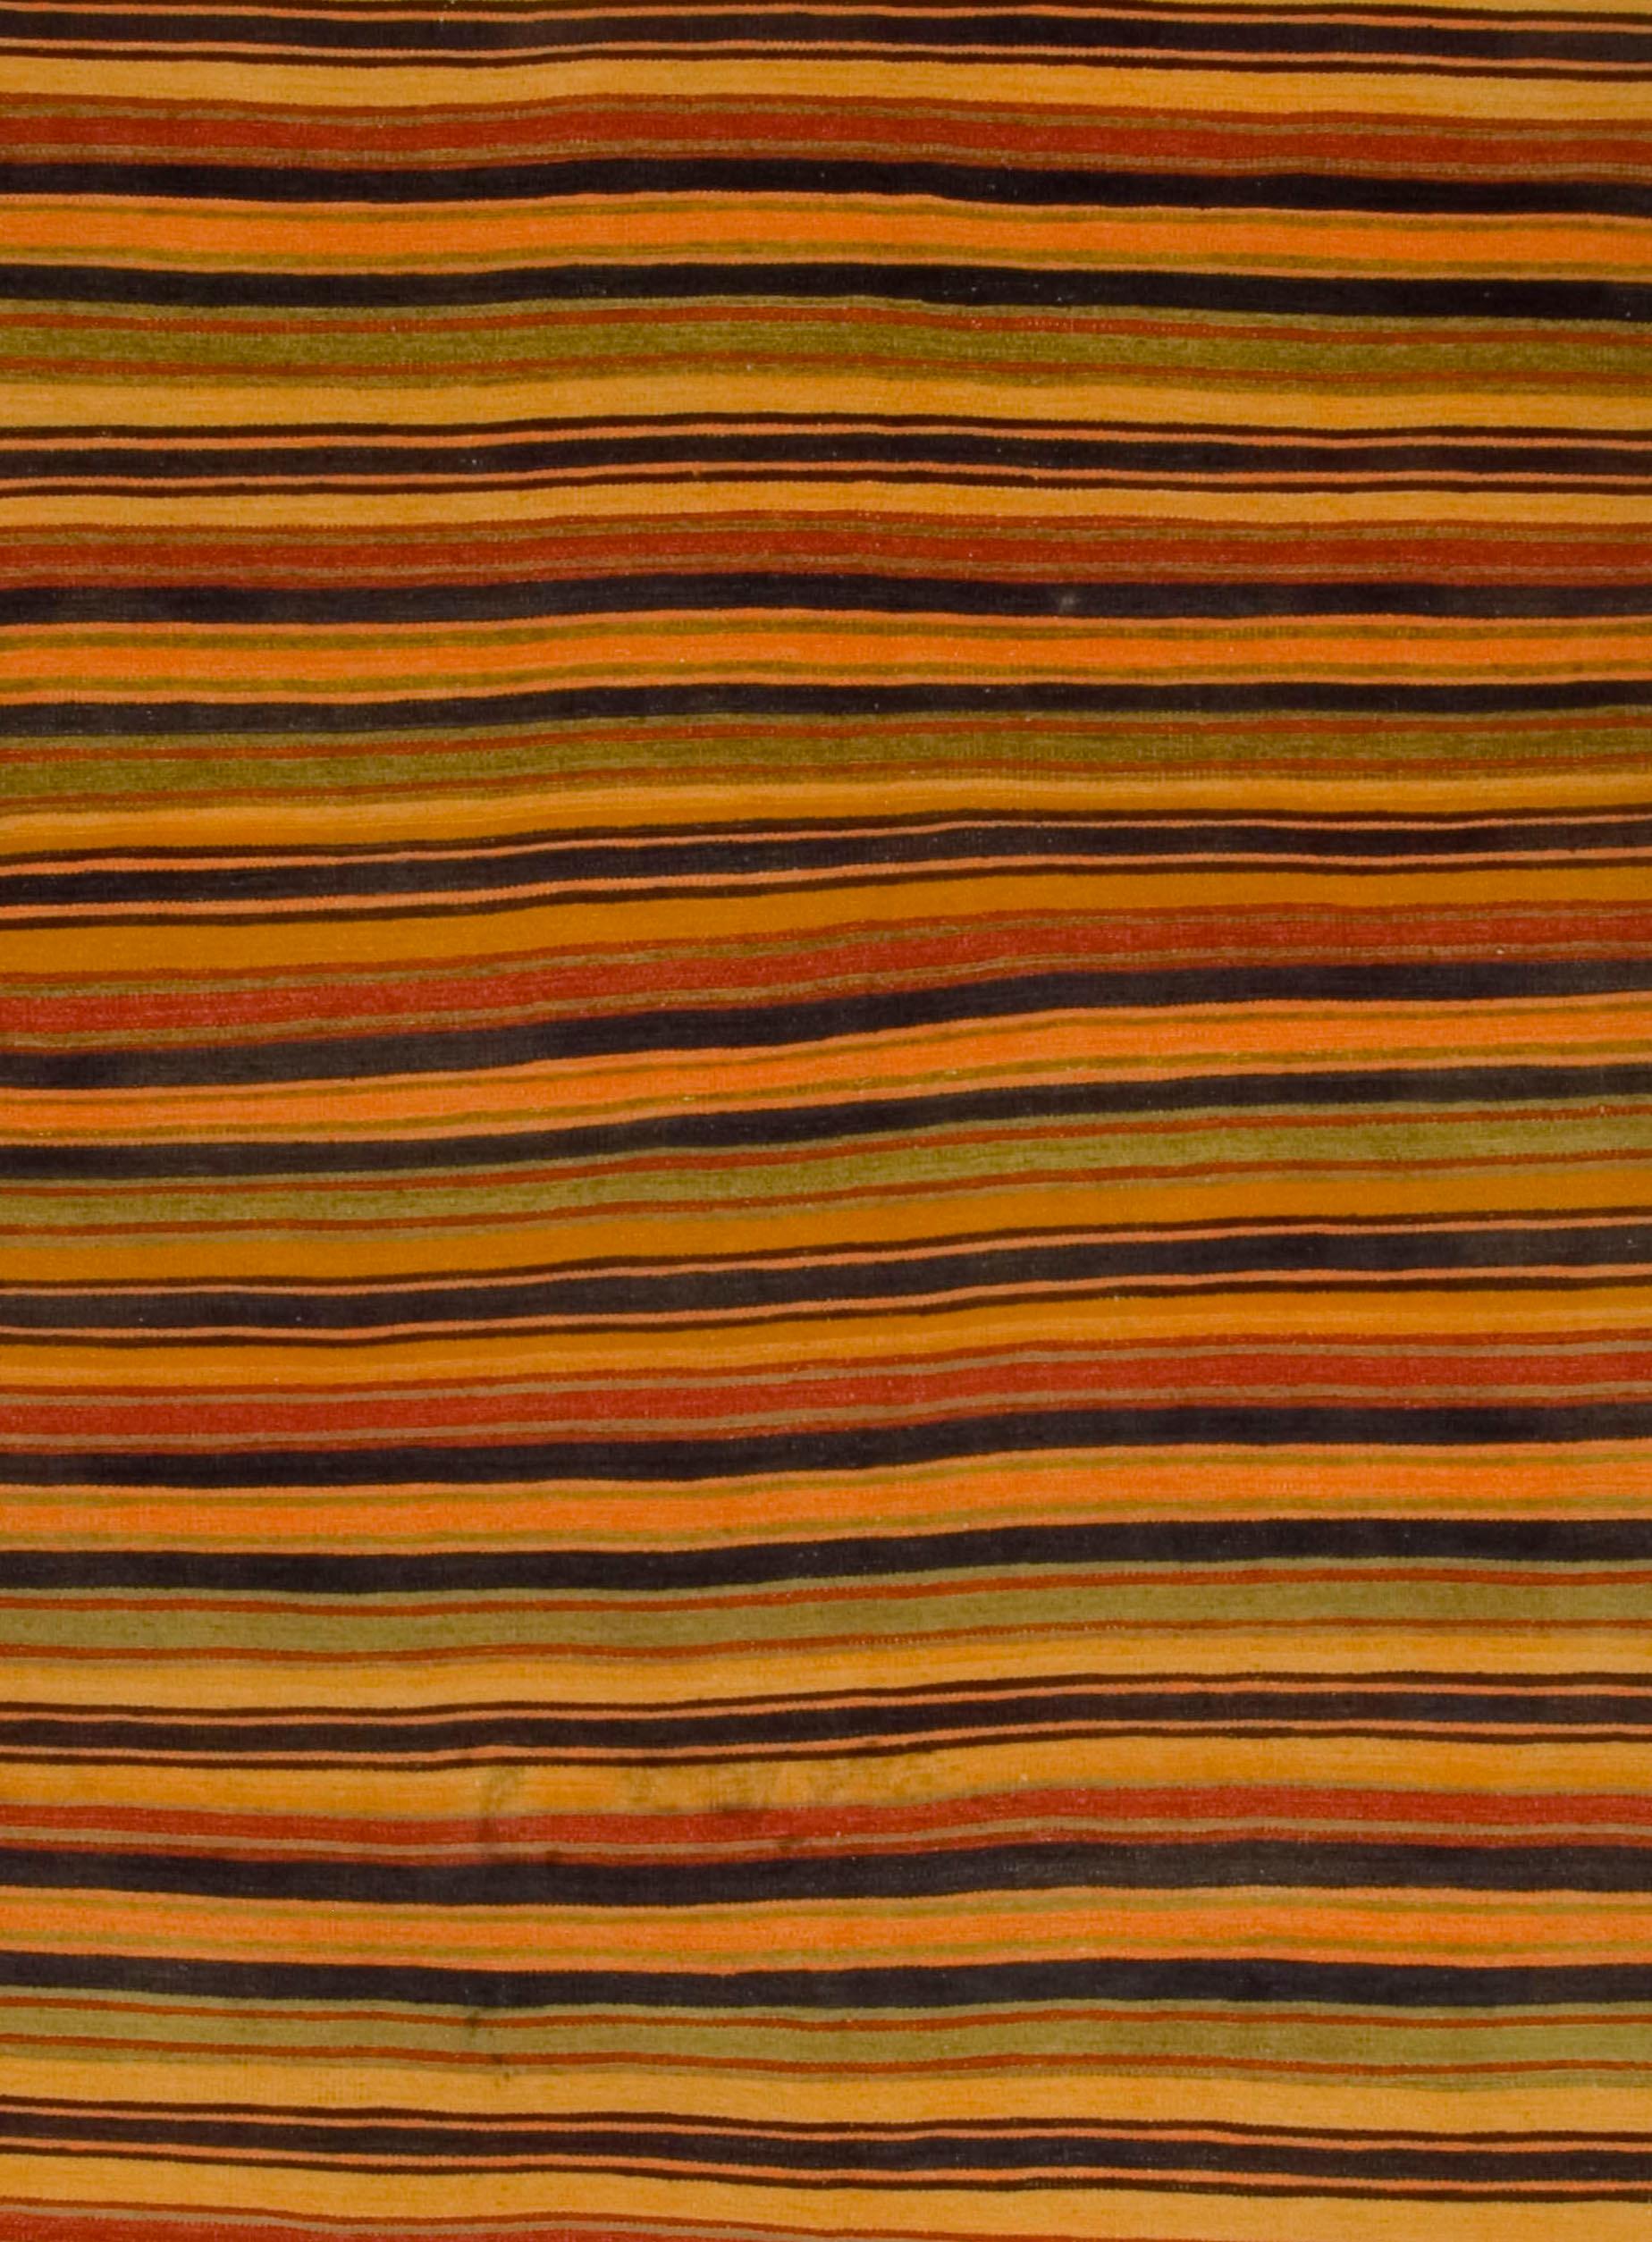 Vieux tapis turc Kilim. Kilim turc rayé vintage tissé à la main dans les années 1950. La simplicité et l'audace de ces pièces peuvent également donner une touche contemporaine et s'intégrer aussi bien dans un cadre moderne que traditionnel. Couleurs